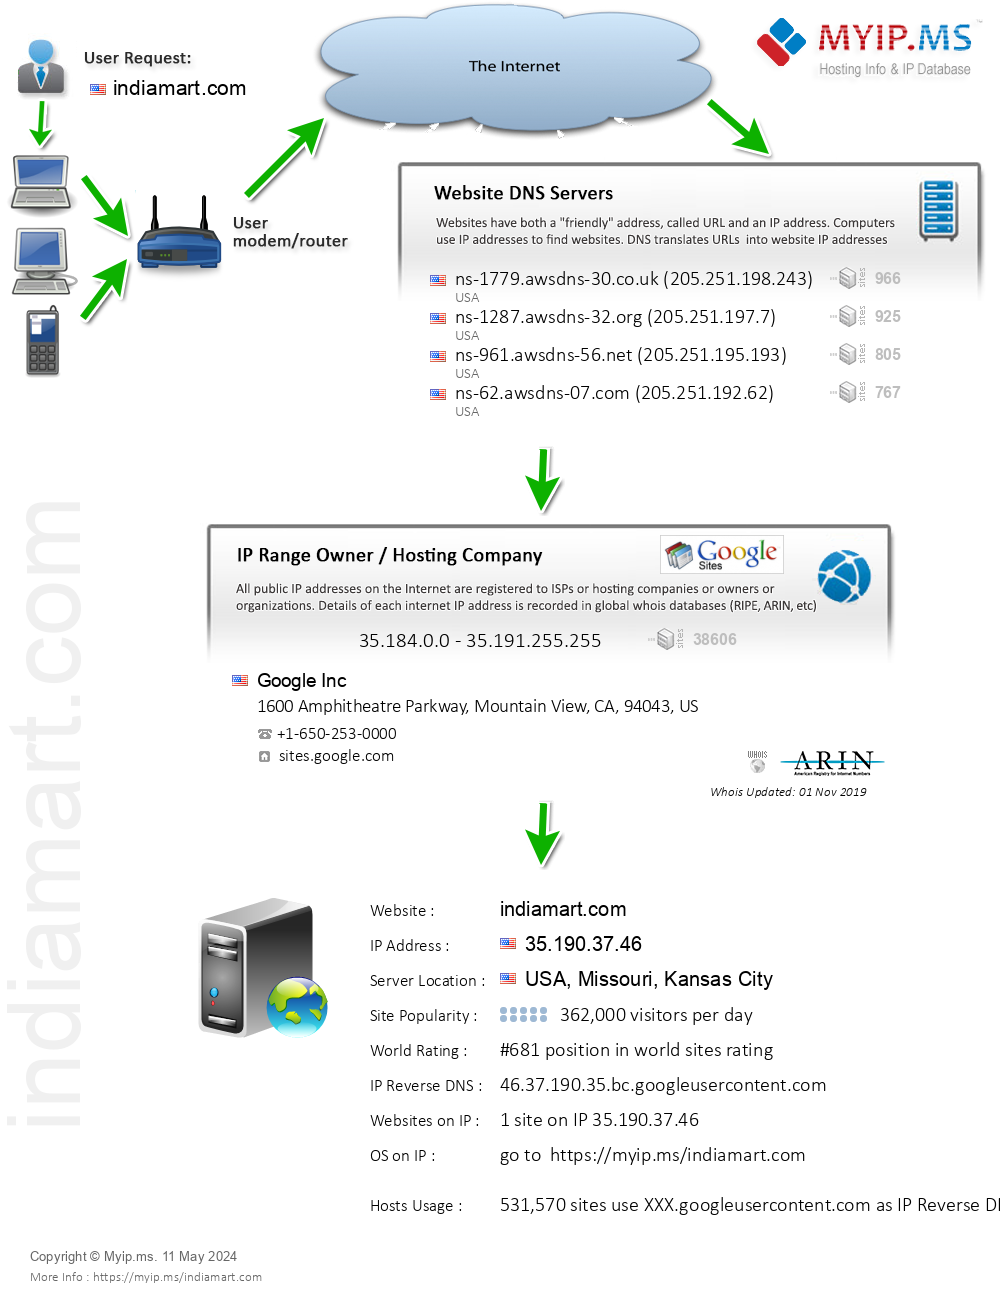 Indiamart.com - Website Hosting Visual IP Diagram